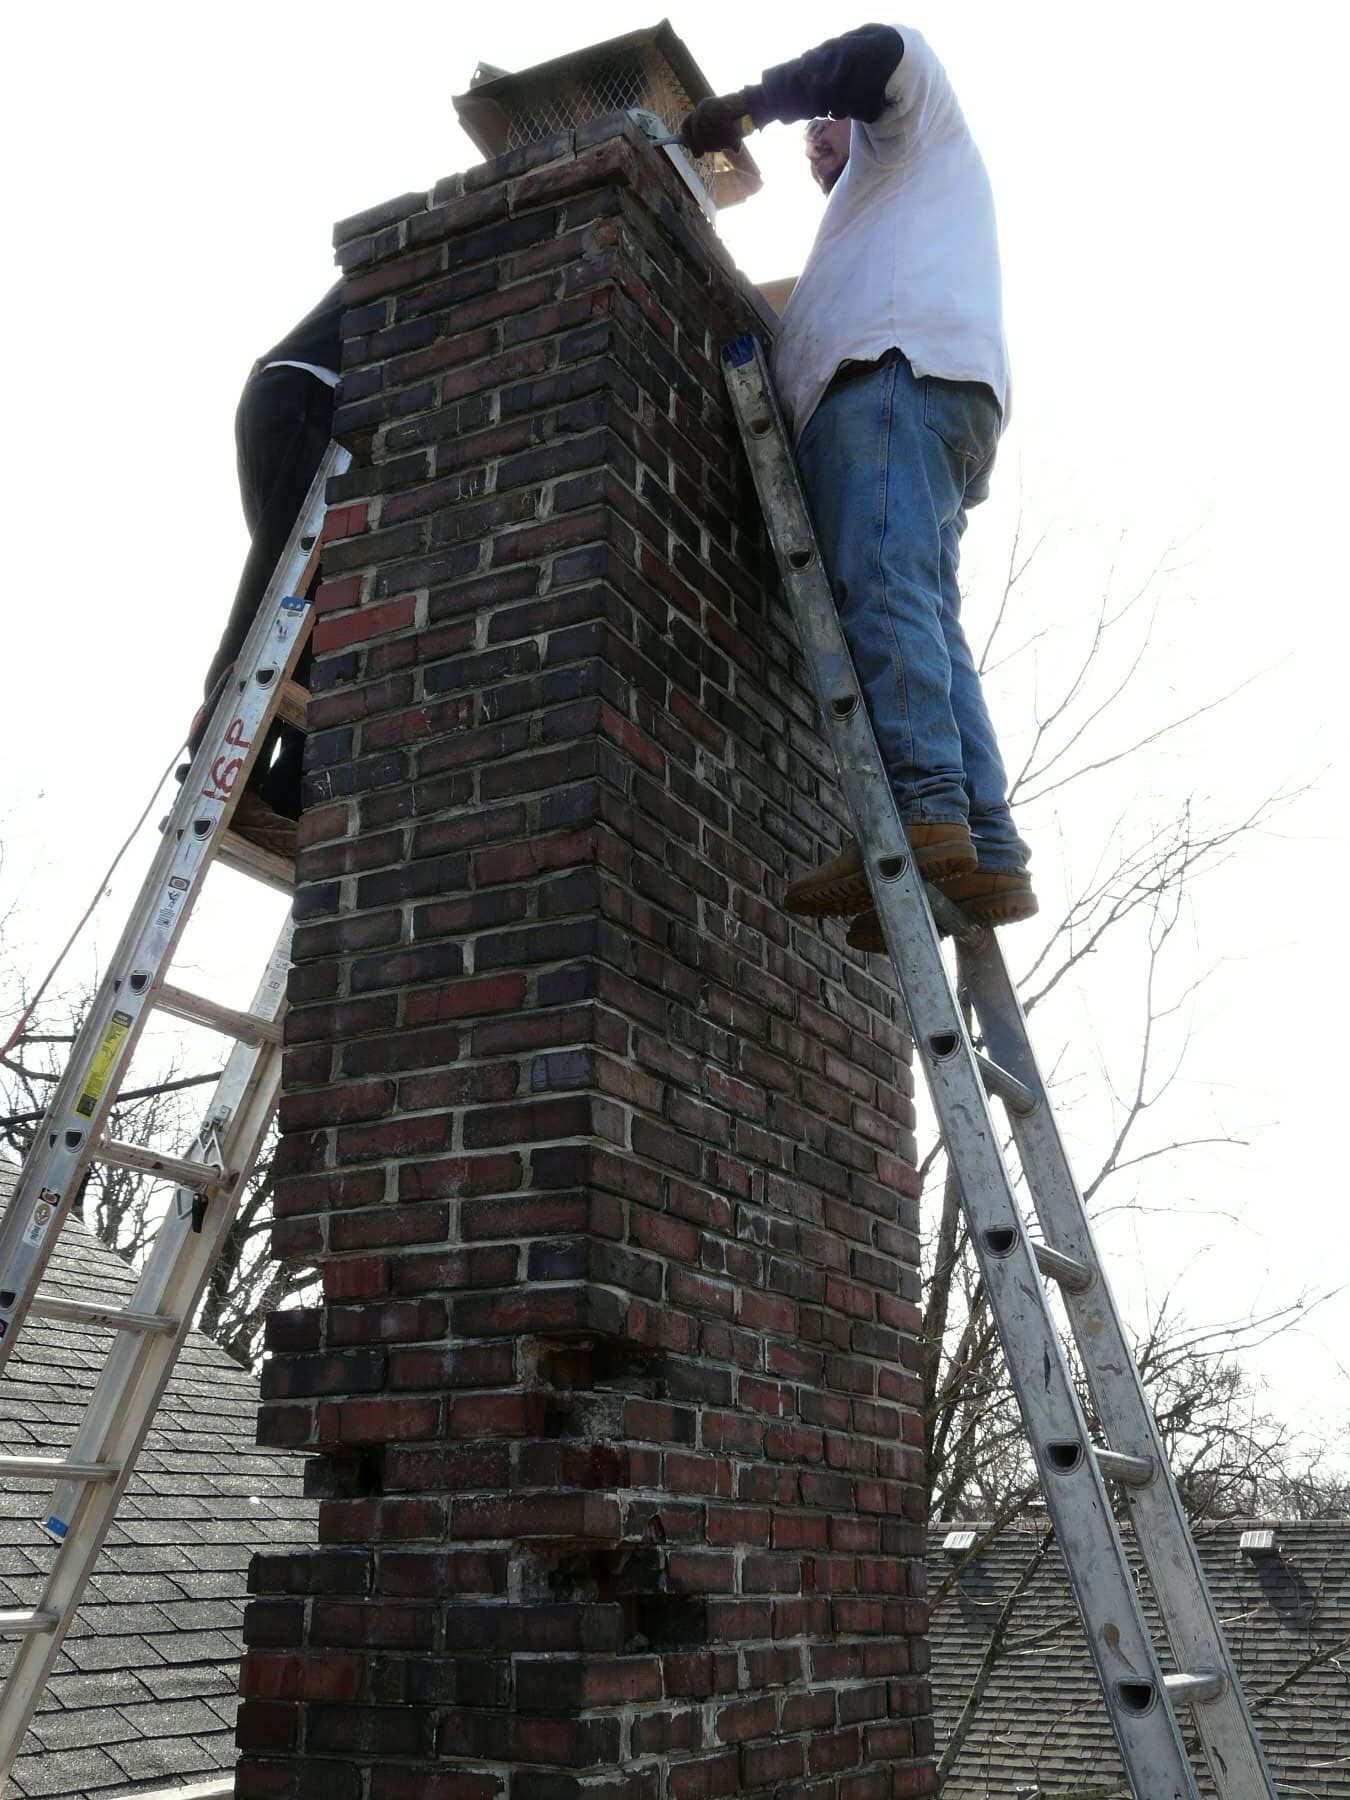 Hinsdale Chimney Repair & Restoration